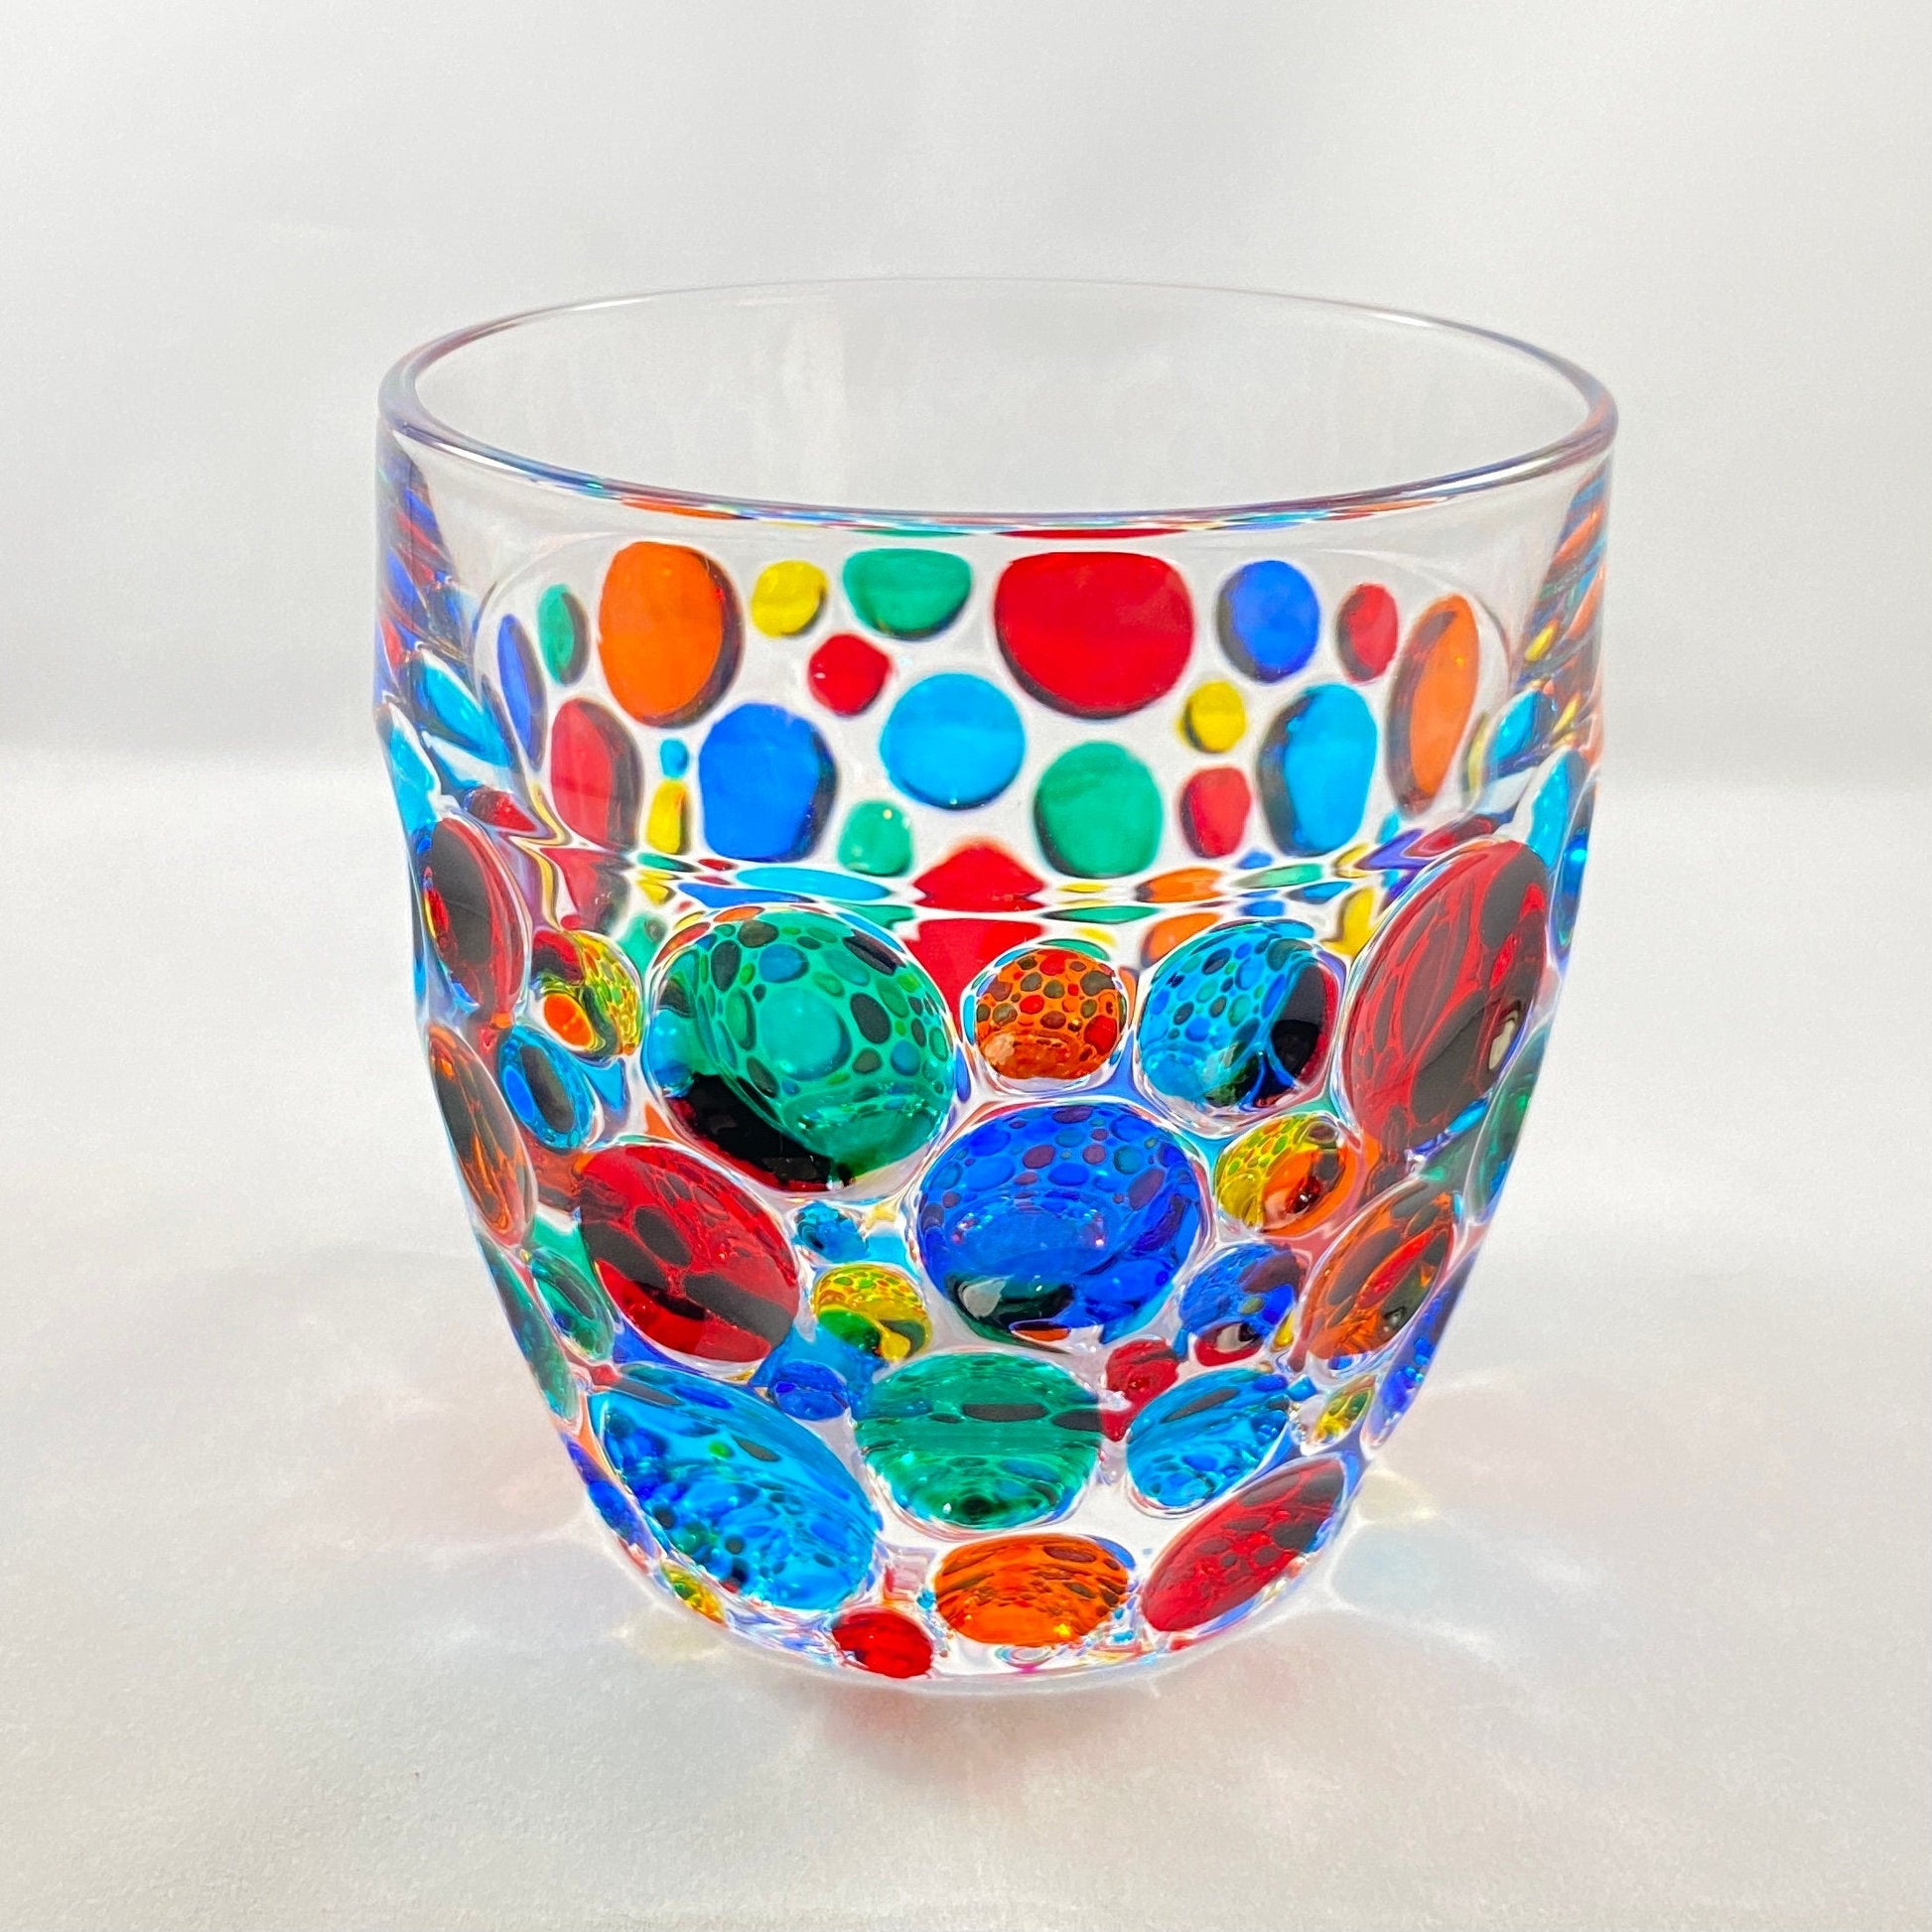 Venetian Glass Kaleidoscope Whiskey Glass - Handmade in Italy, Colorful Murano Glass